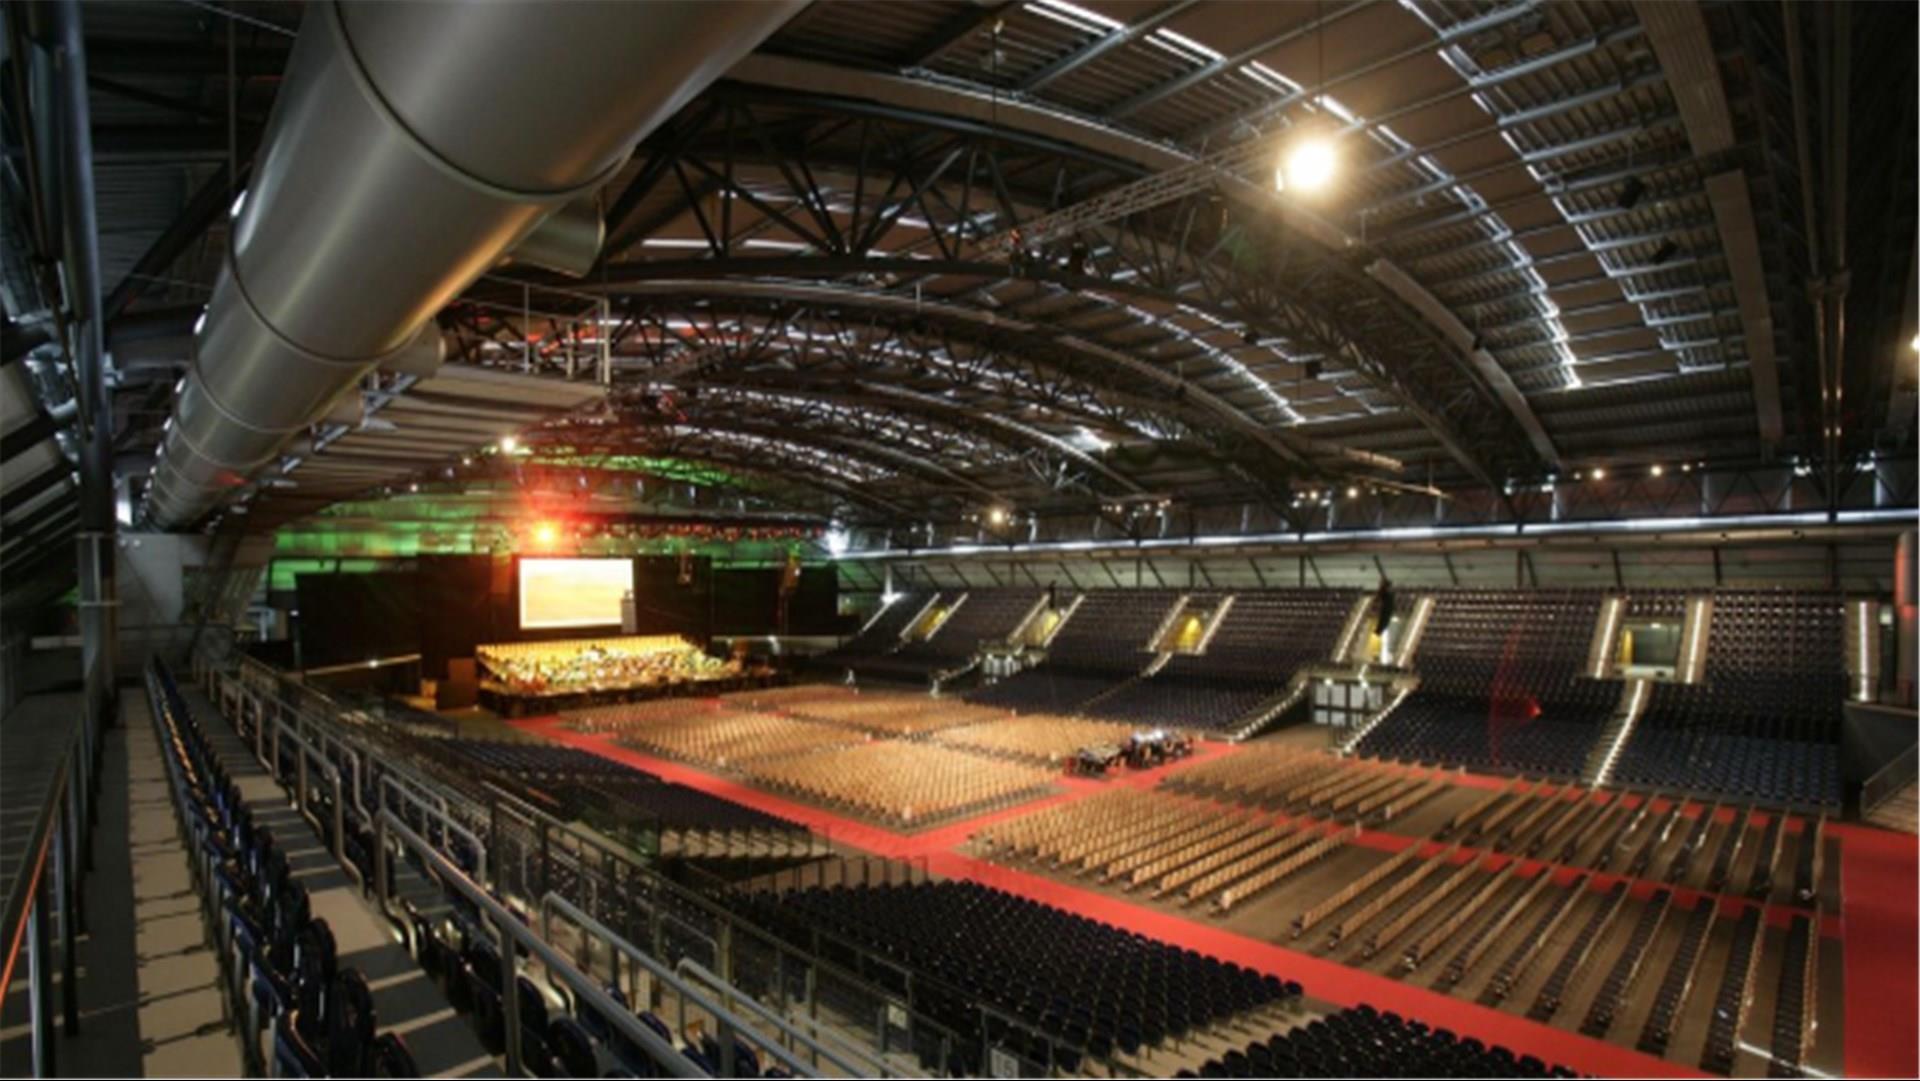 Arena Leipzig 